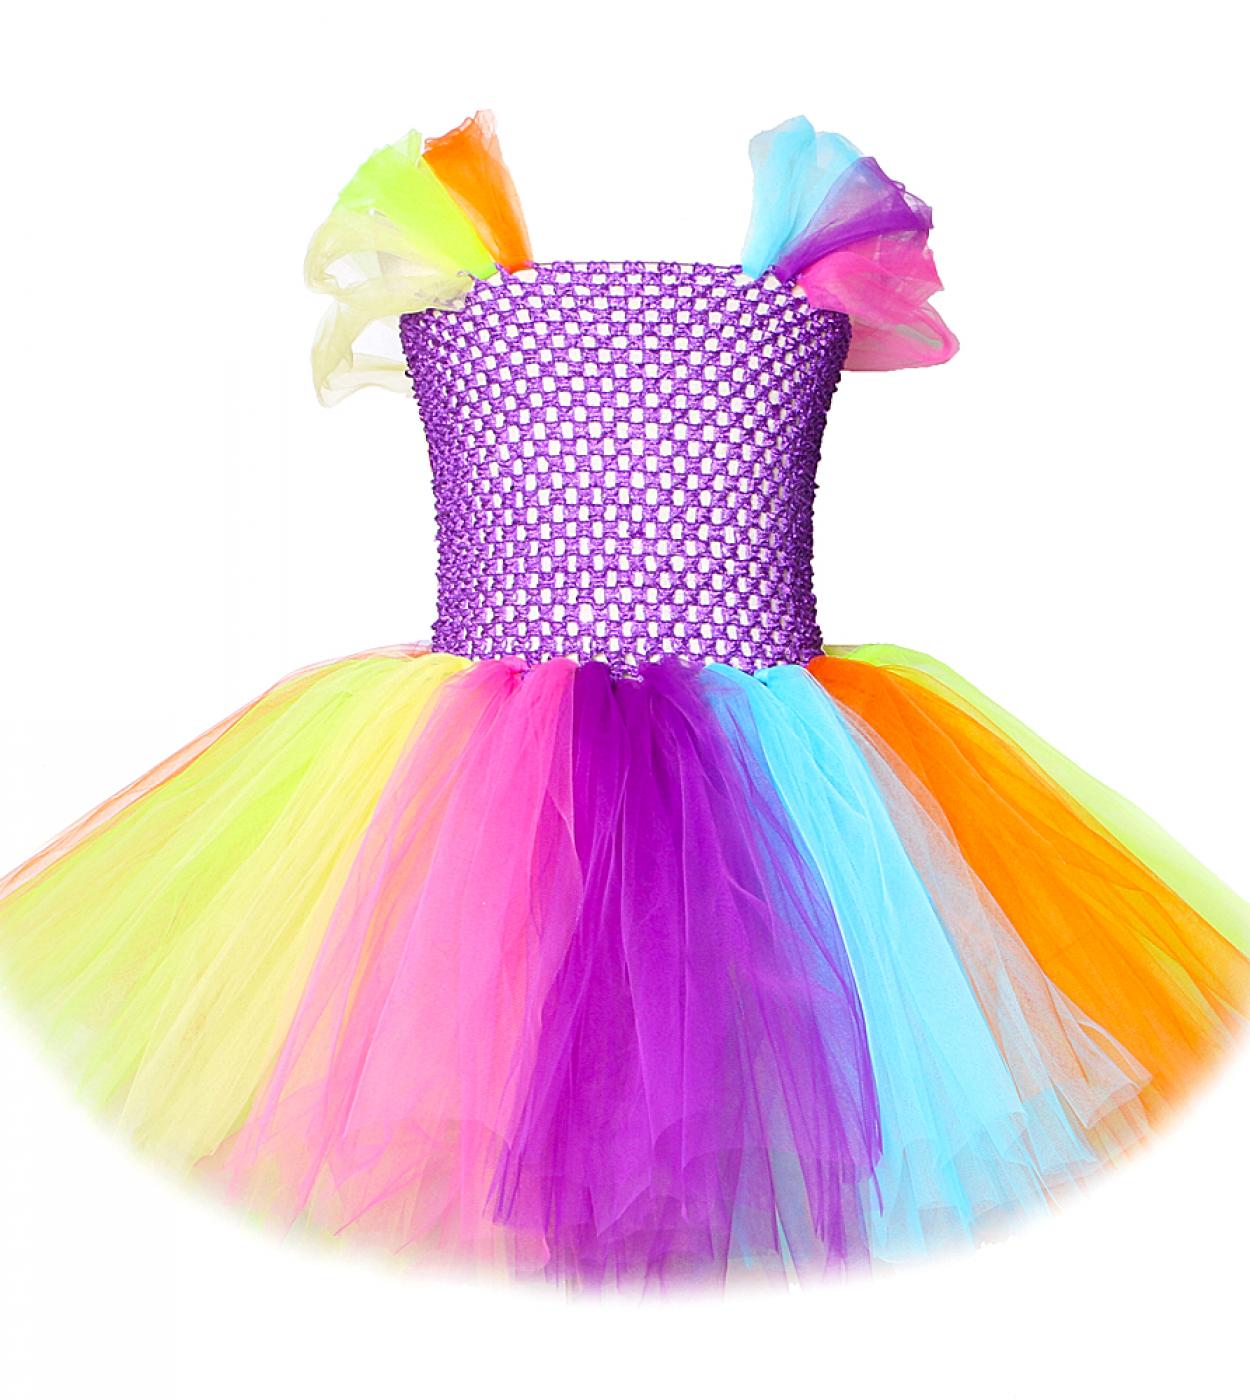 שמלת טוטו קשת מתוקה לילדות נסיכה שמלות יום הולדת צבעוניות ילדה קטנה תחפושות ליל כל הקדושים לחג המולד לילדים